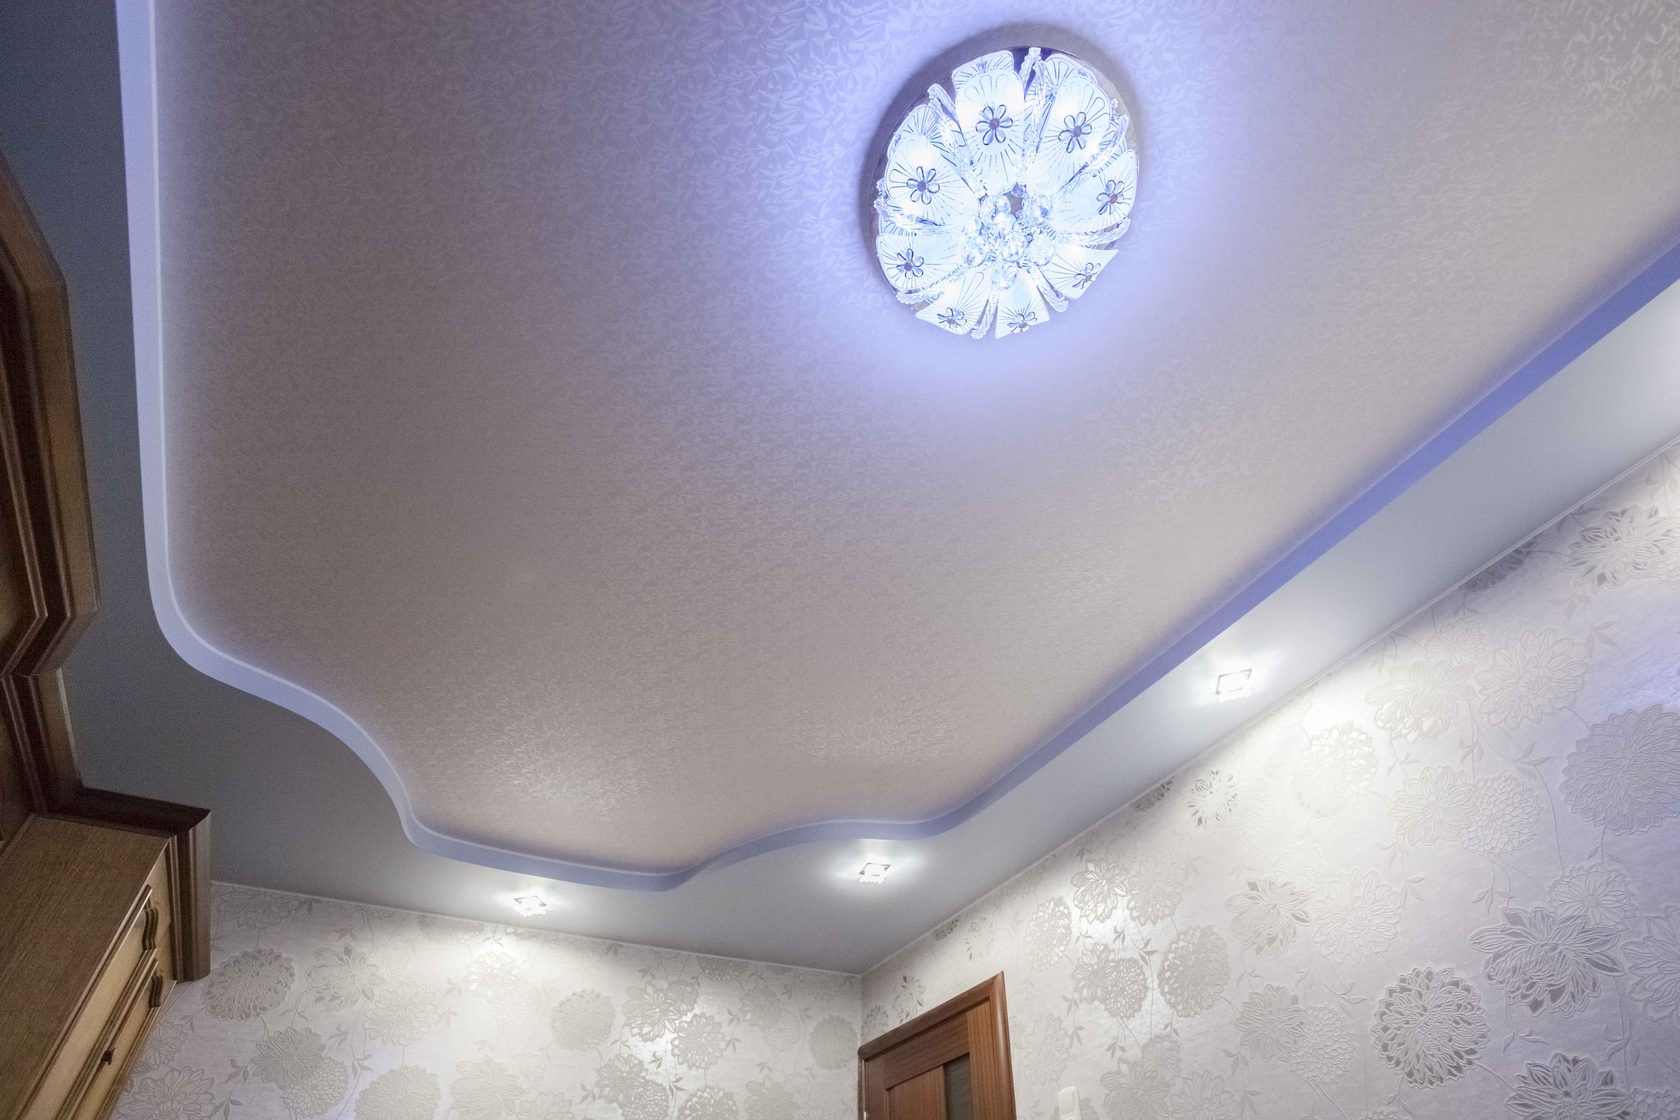 Натяжные потолки двухуровневые с подсветкой для зала фото